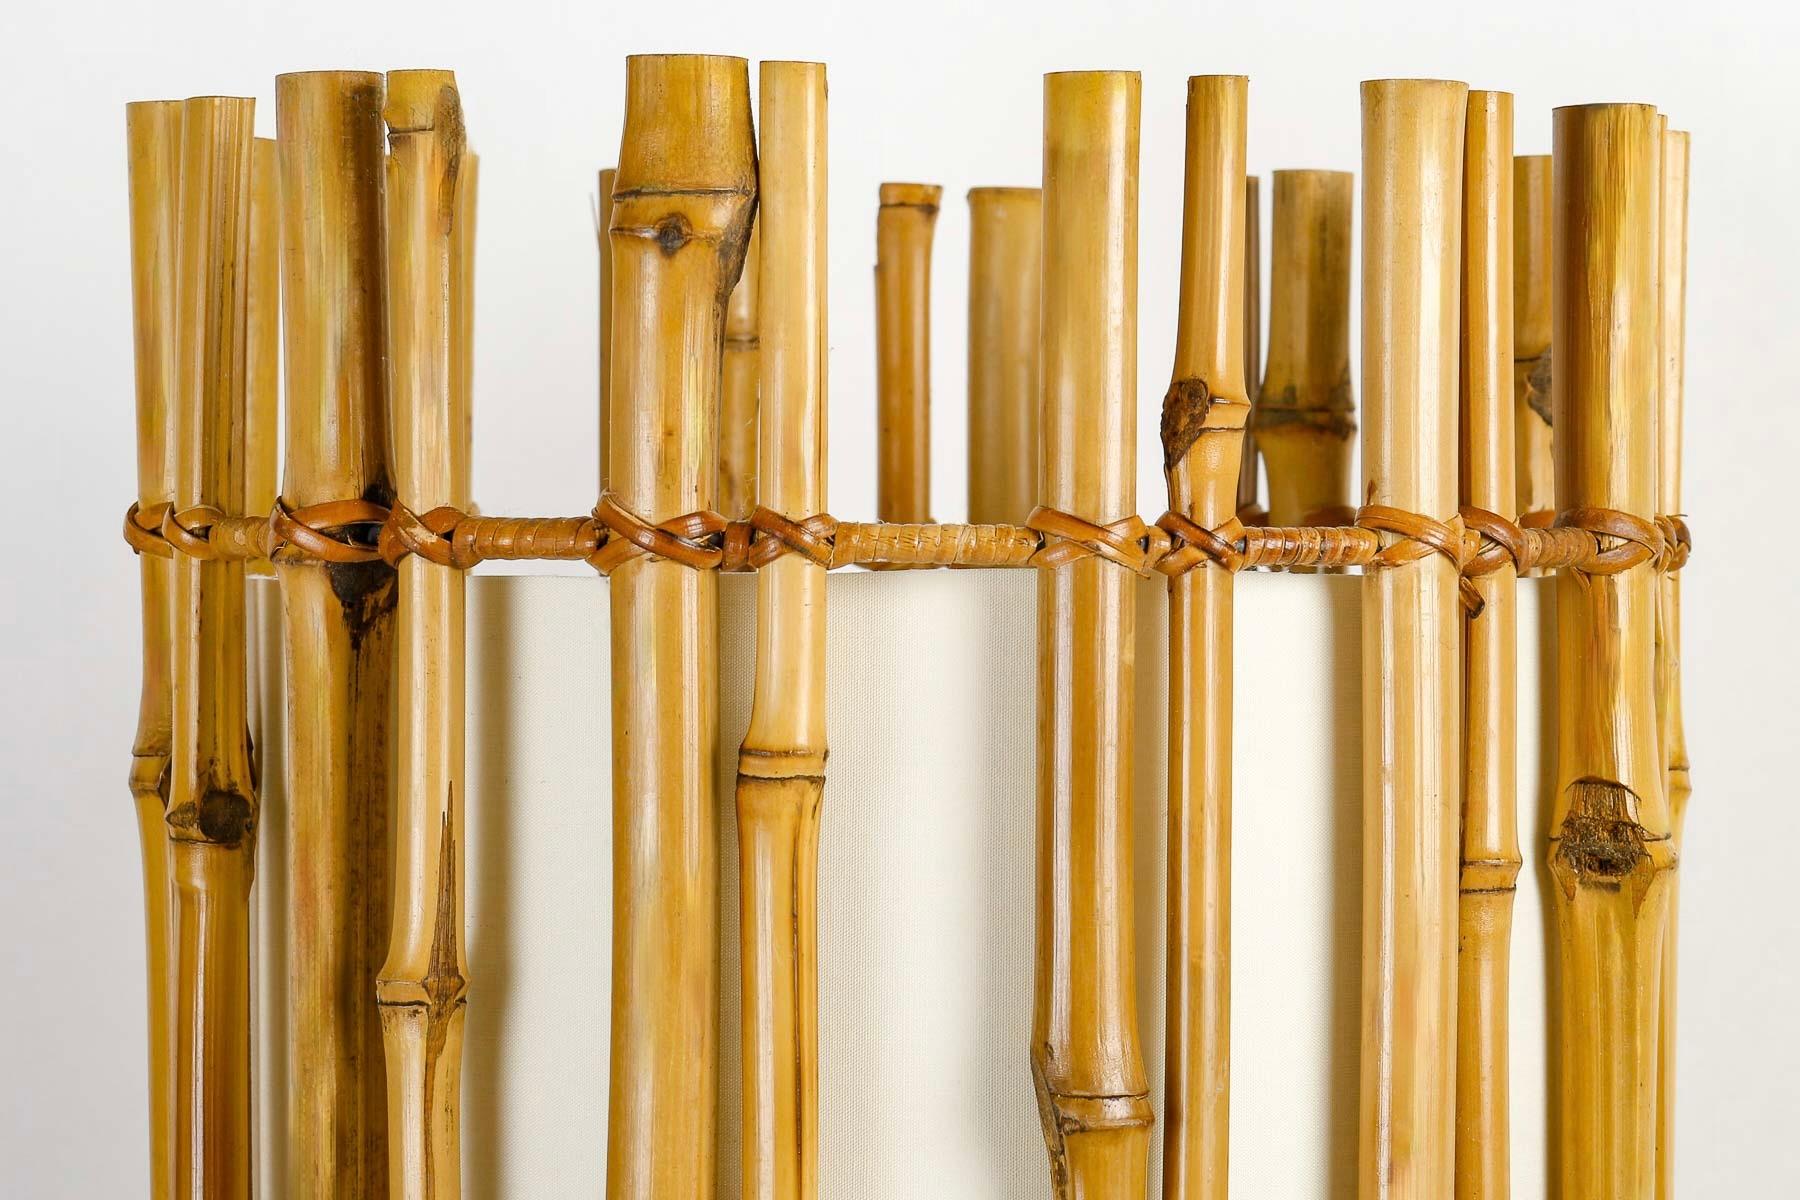 Besteht aus einem Zylinder aus vertikal angeordneten Bambusstämmen, die von 3 mit Rattandraht verkleideten Kreisen in 3 verschiedenen Höhen zusammengehalten werden.
Der Bambuszylinder ist mit einem cremefarbenen Lampenschirm ausgekleidet, in dem die